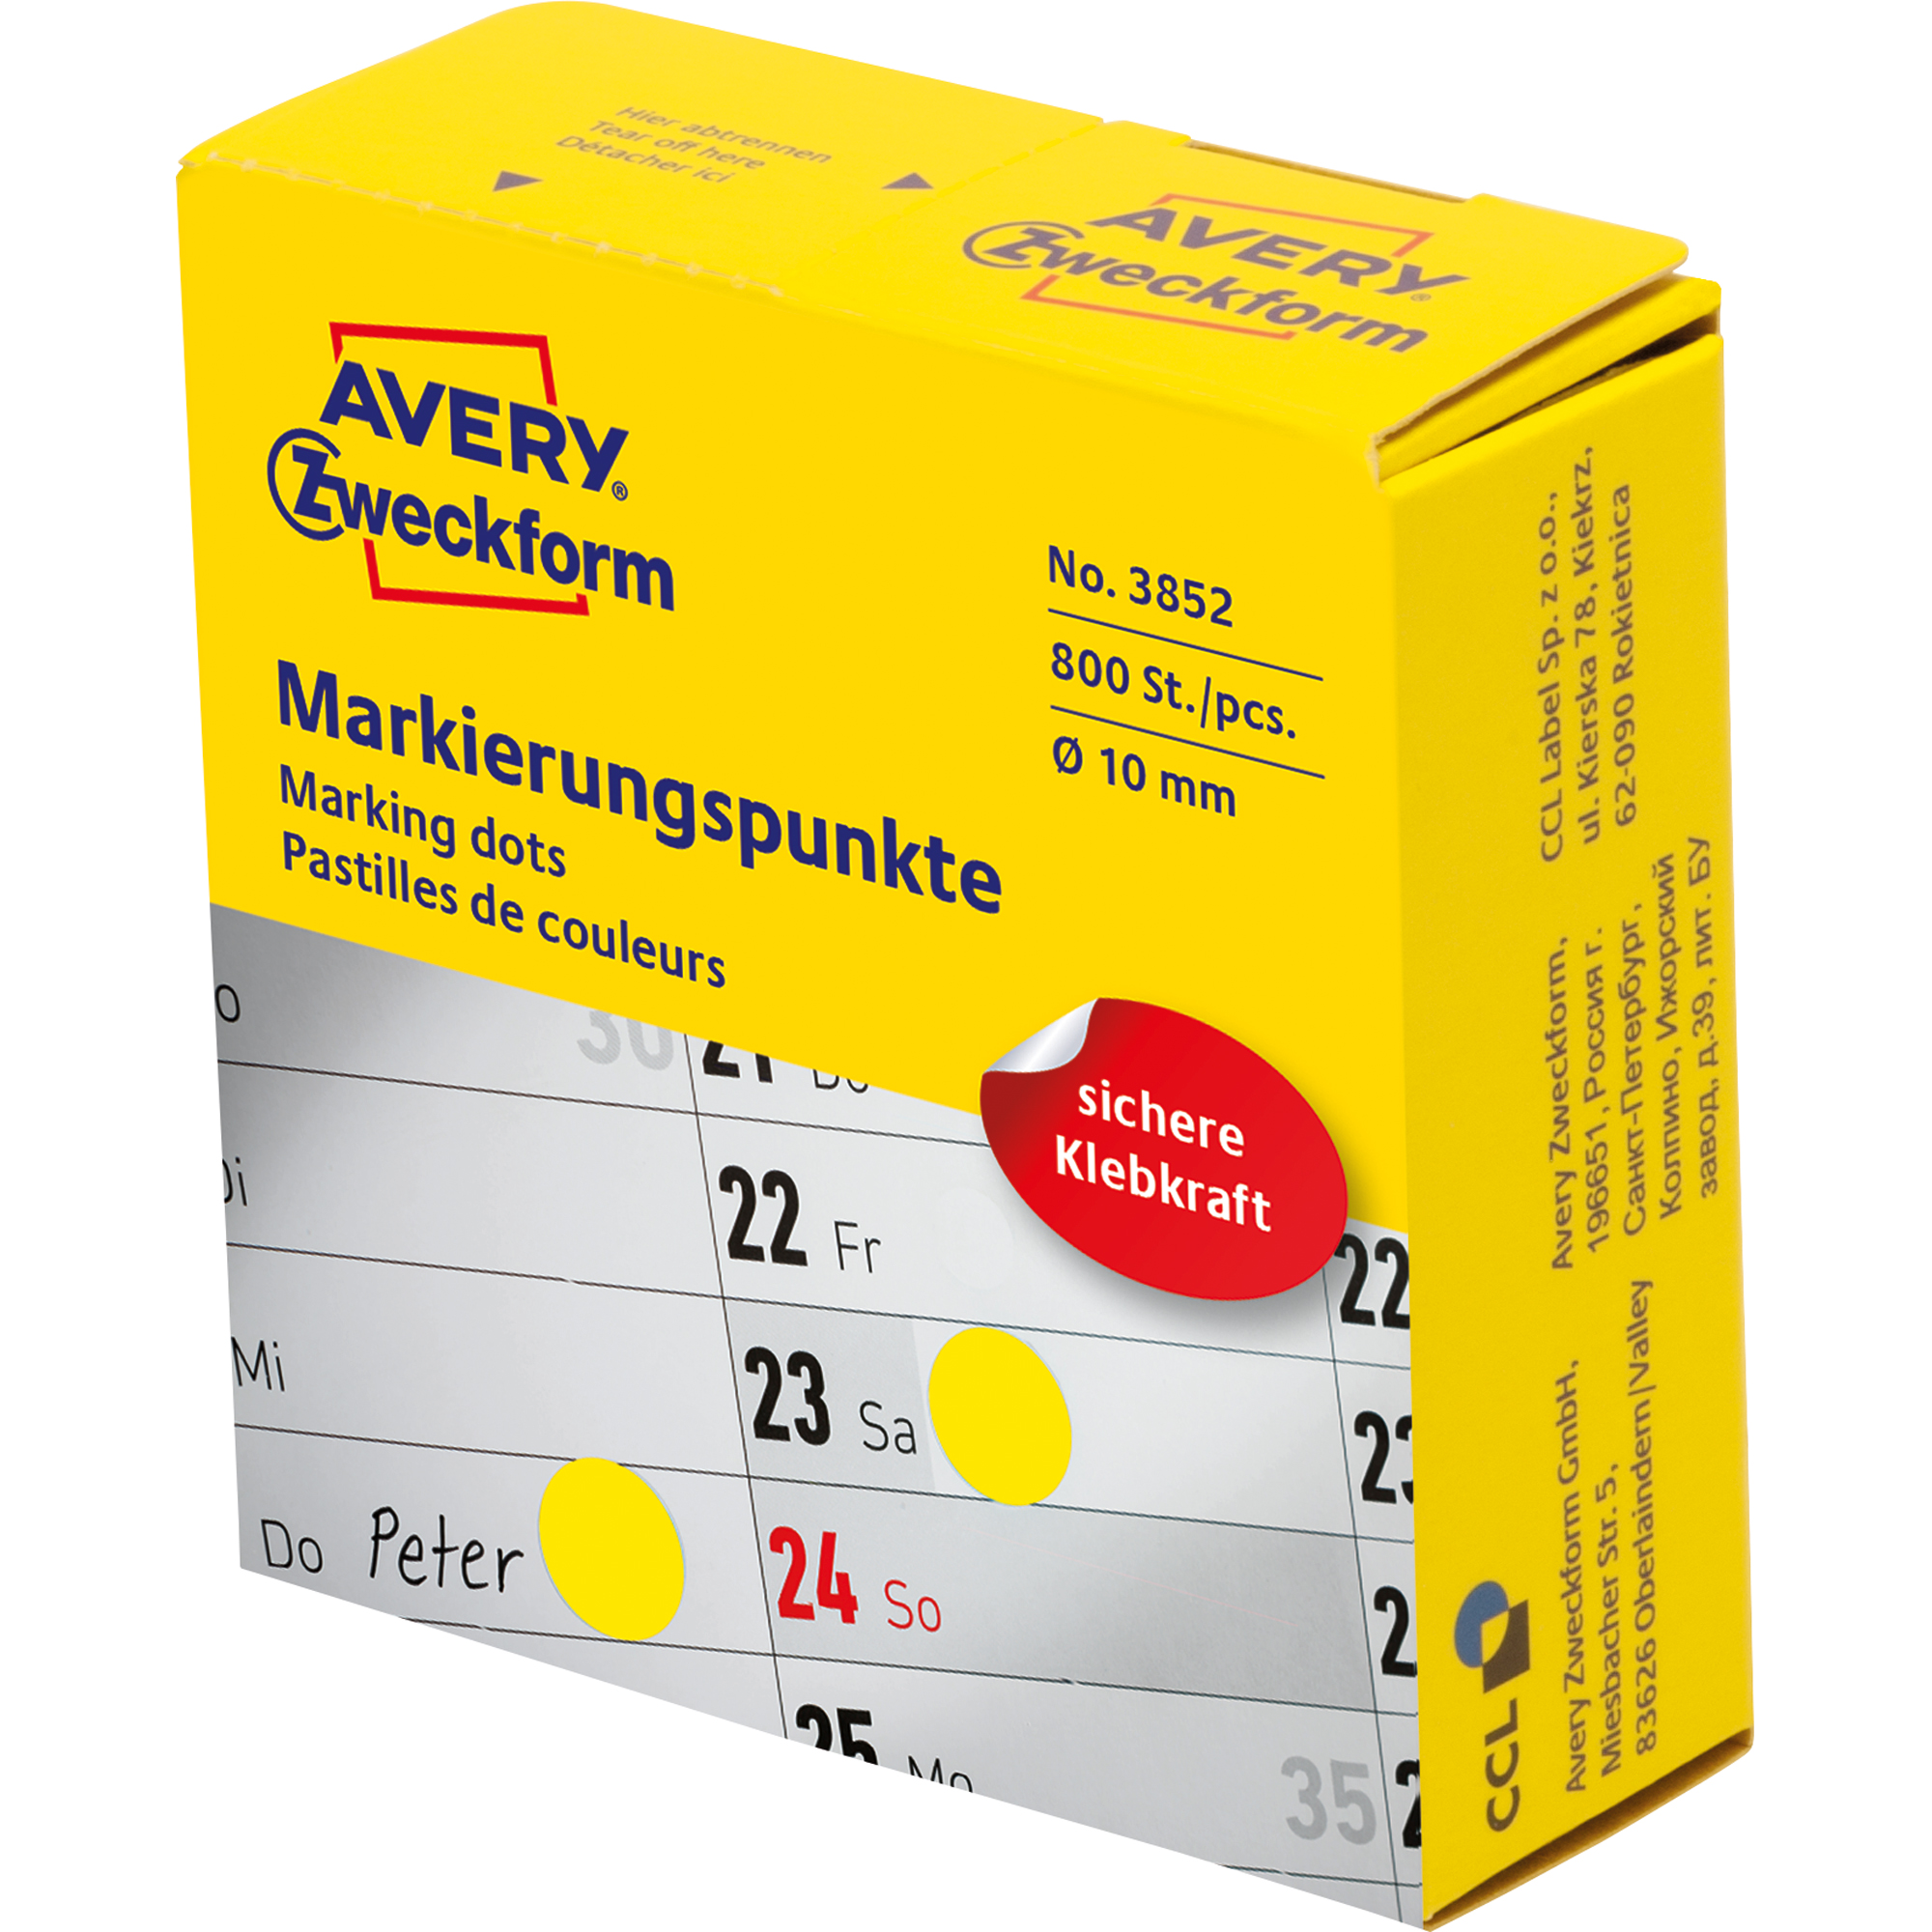 Avery Zweckform Markierungspunkt 10 mm gelb